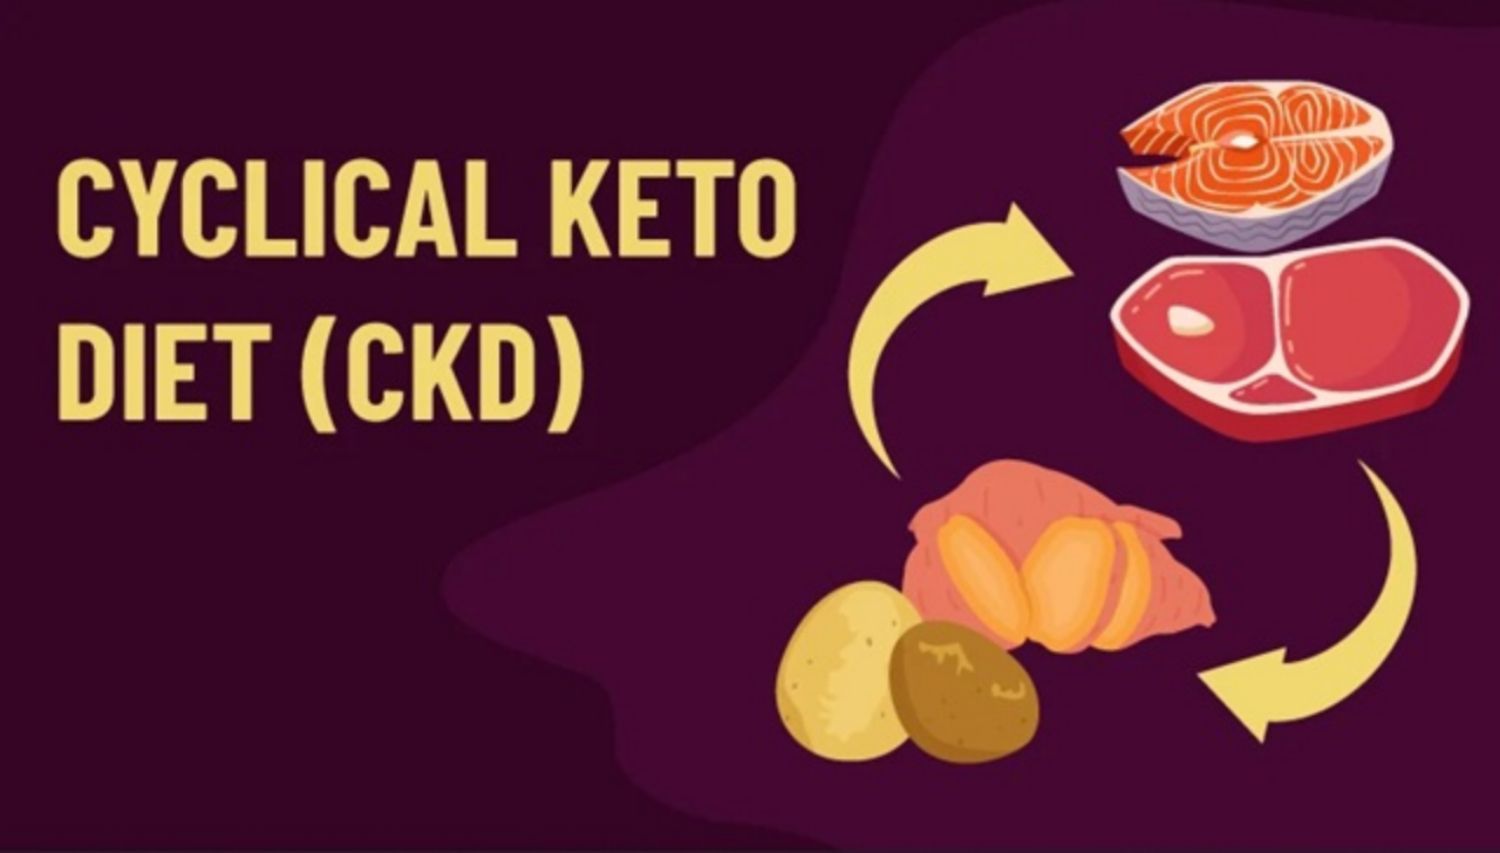 Chế độ ăn Keto theo chu kỳ (CKD) là gì?